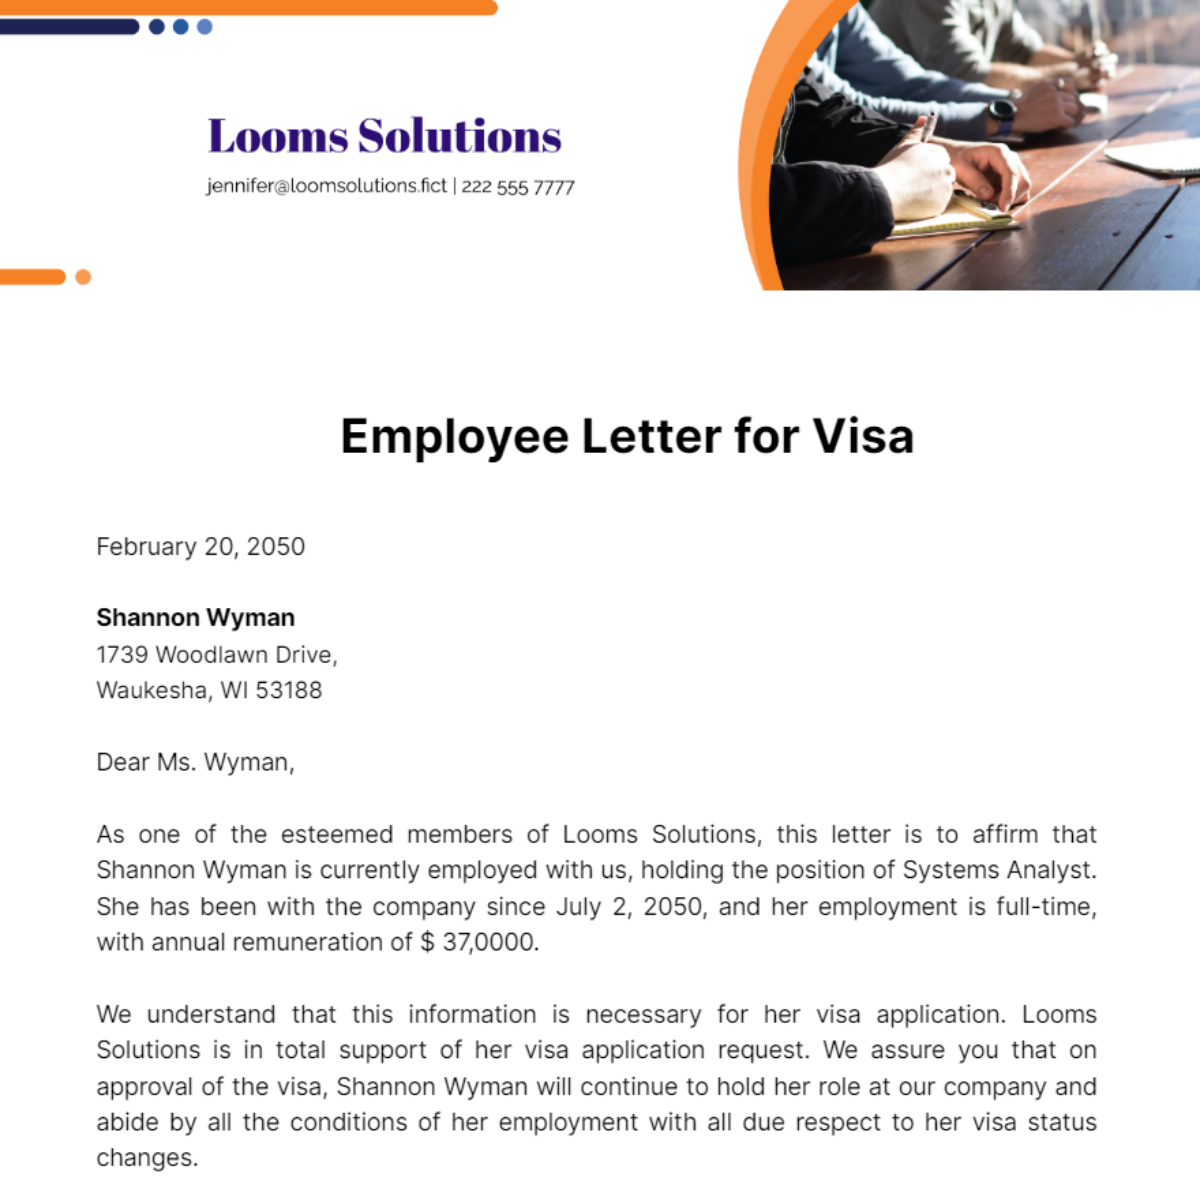 Employee Letter for Visa Template